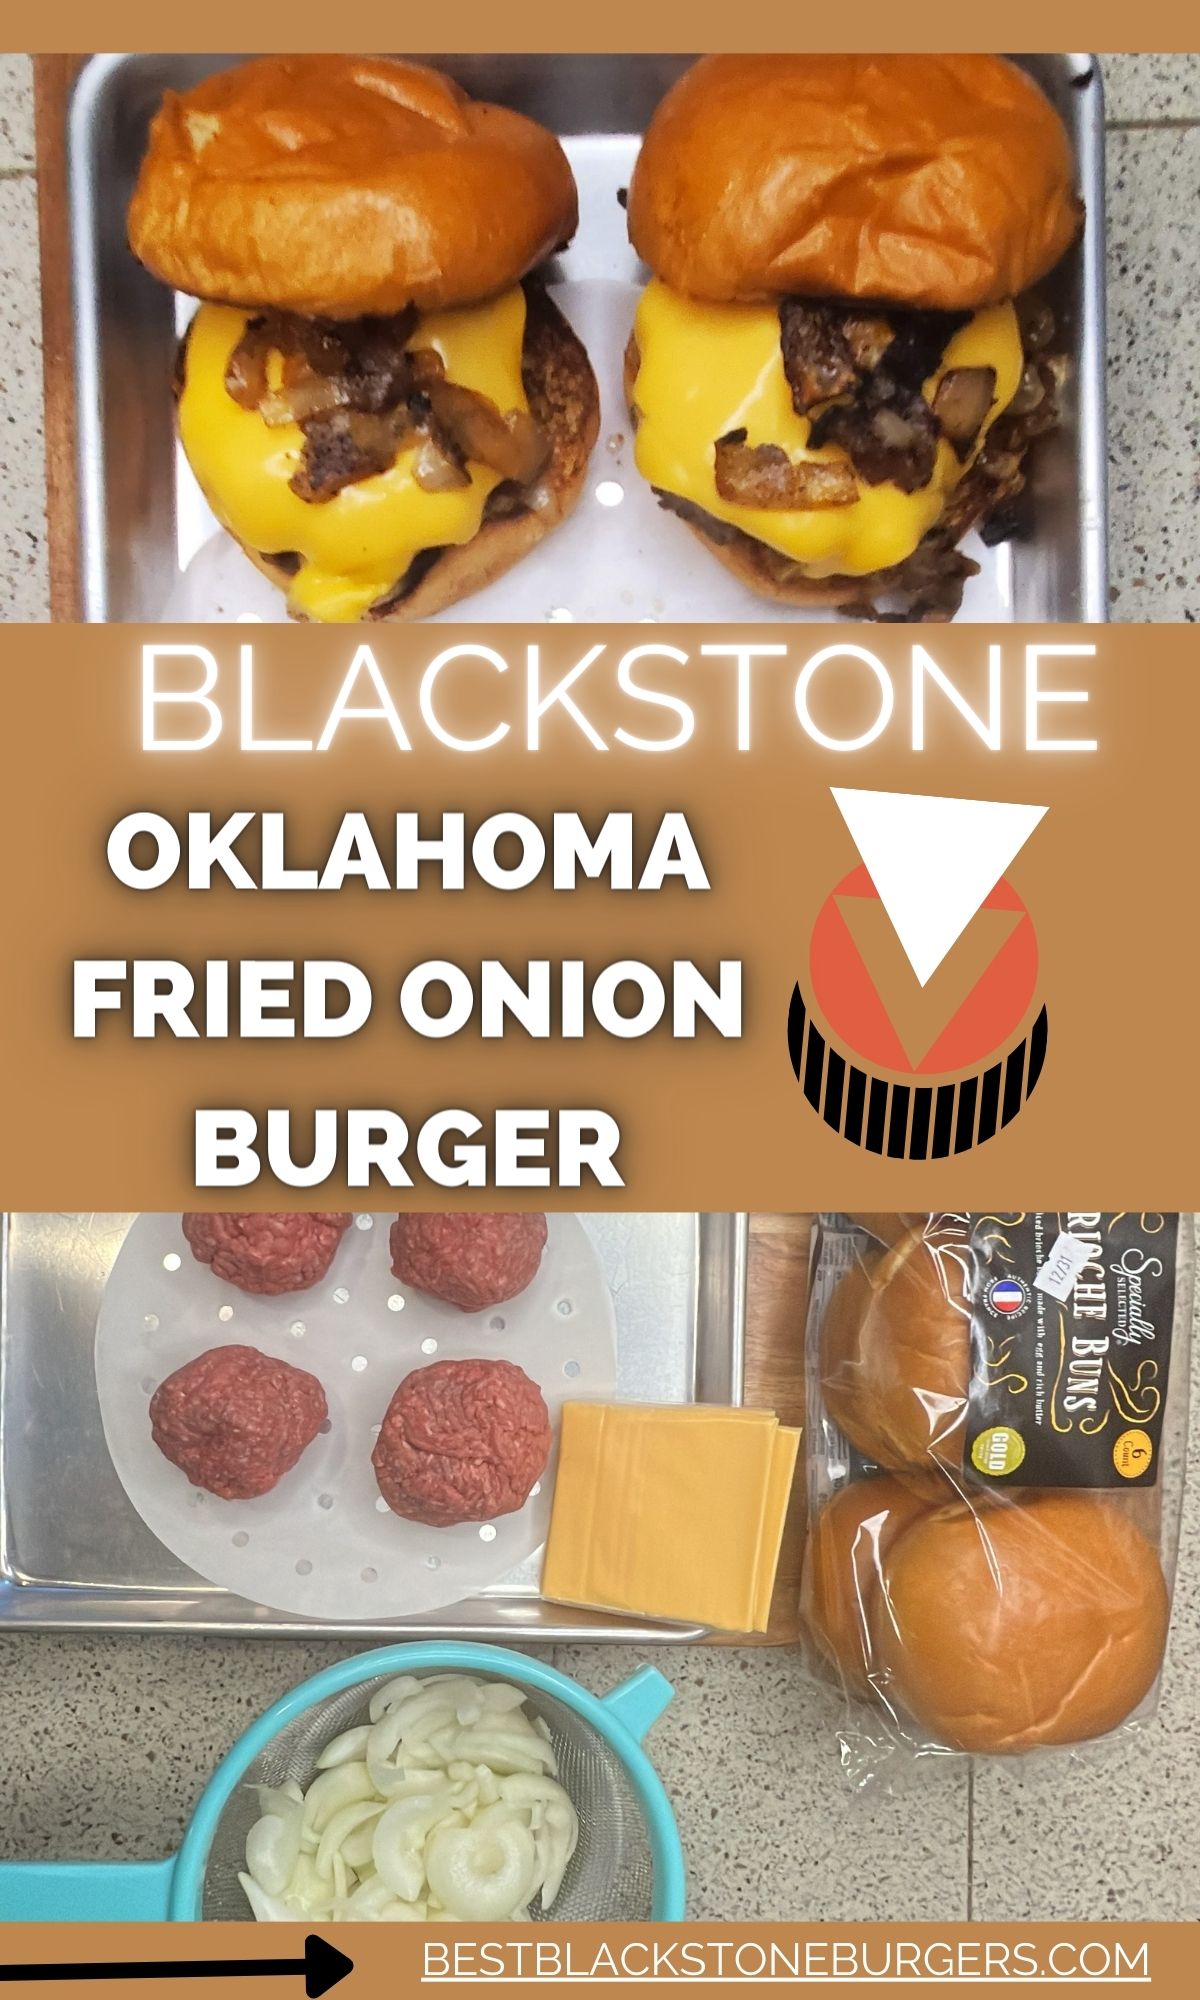 Blackstone oklahoma fried onion burger.